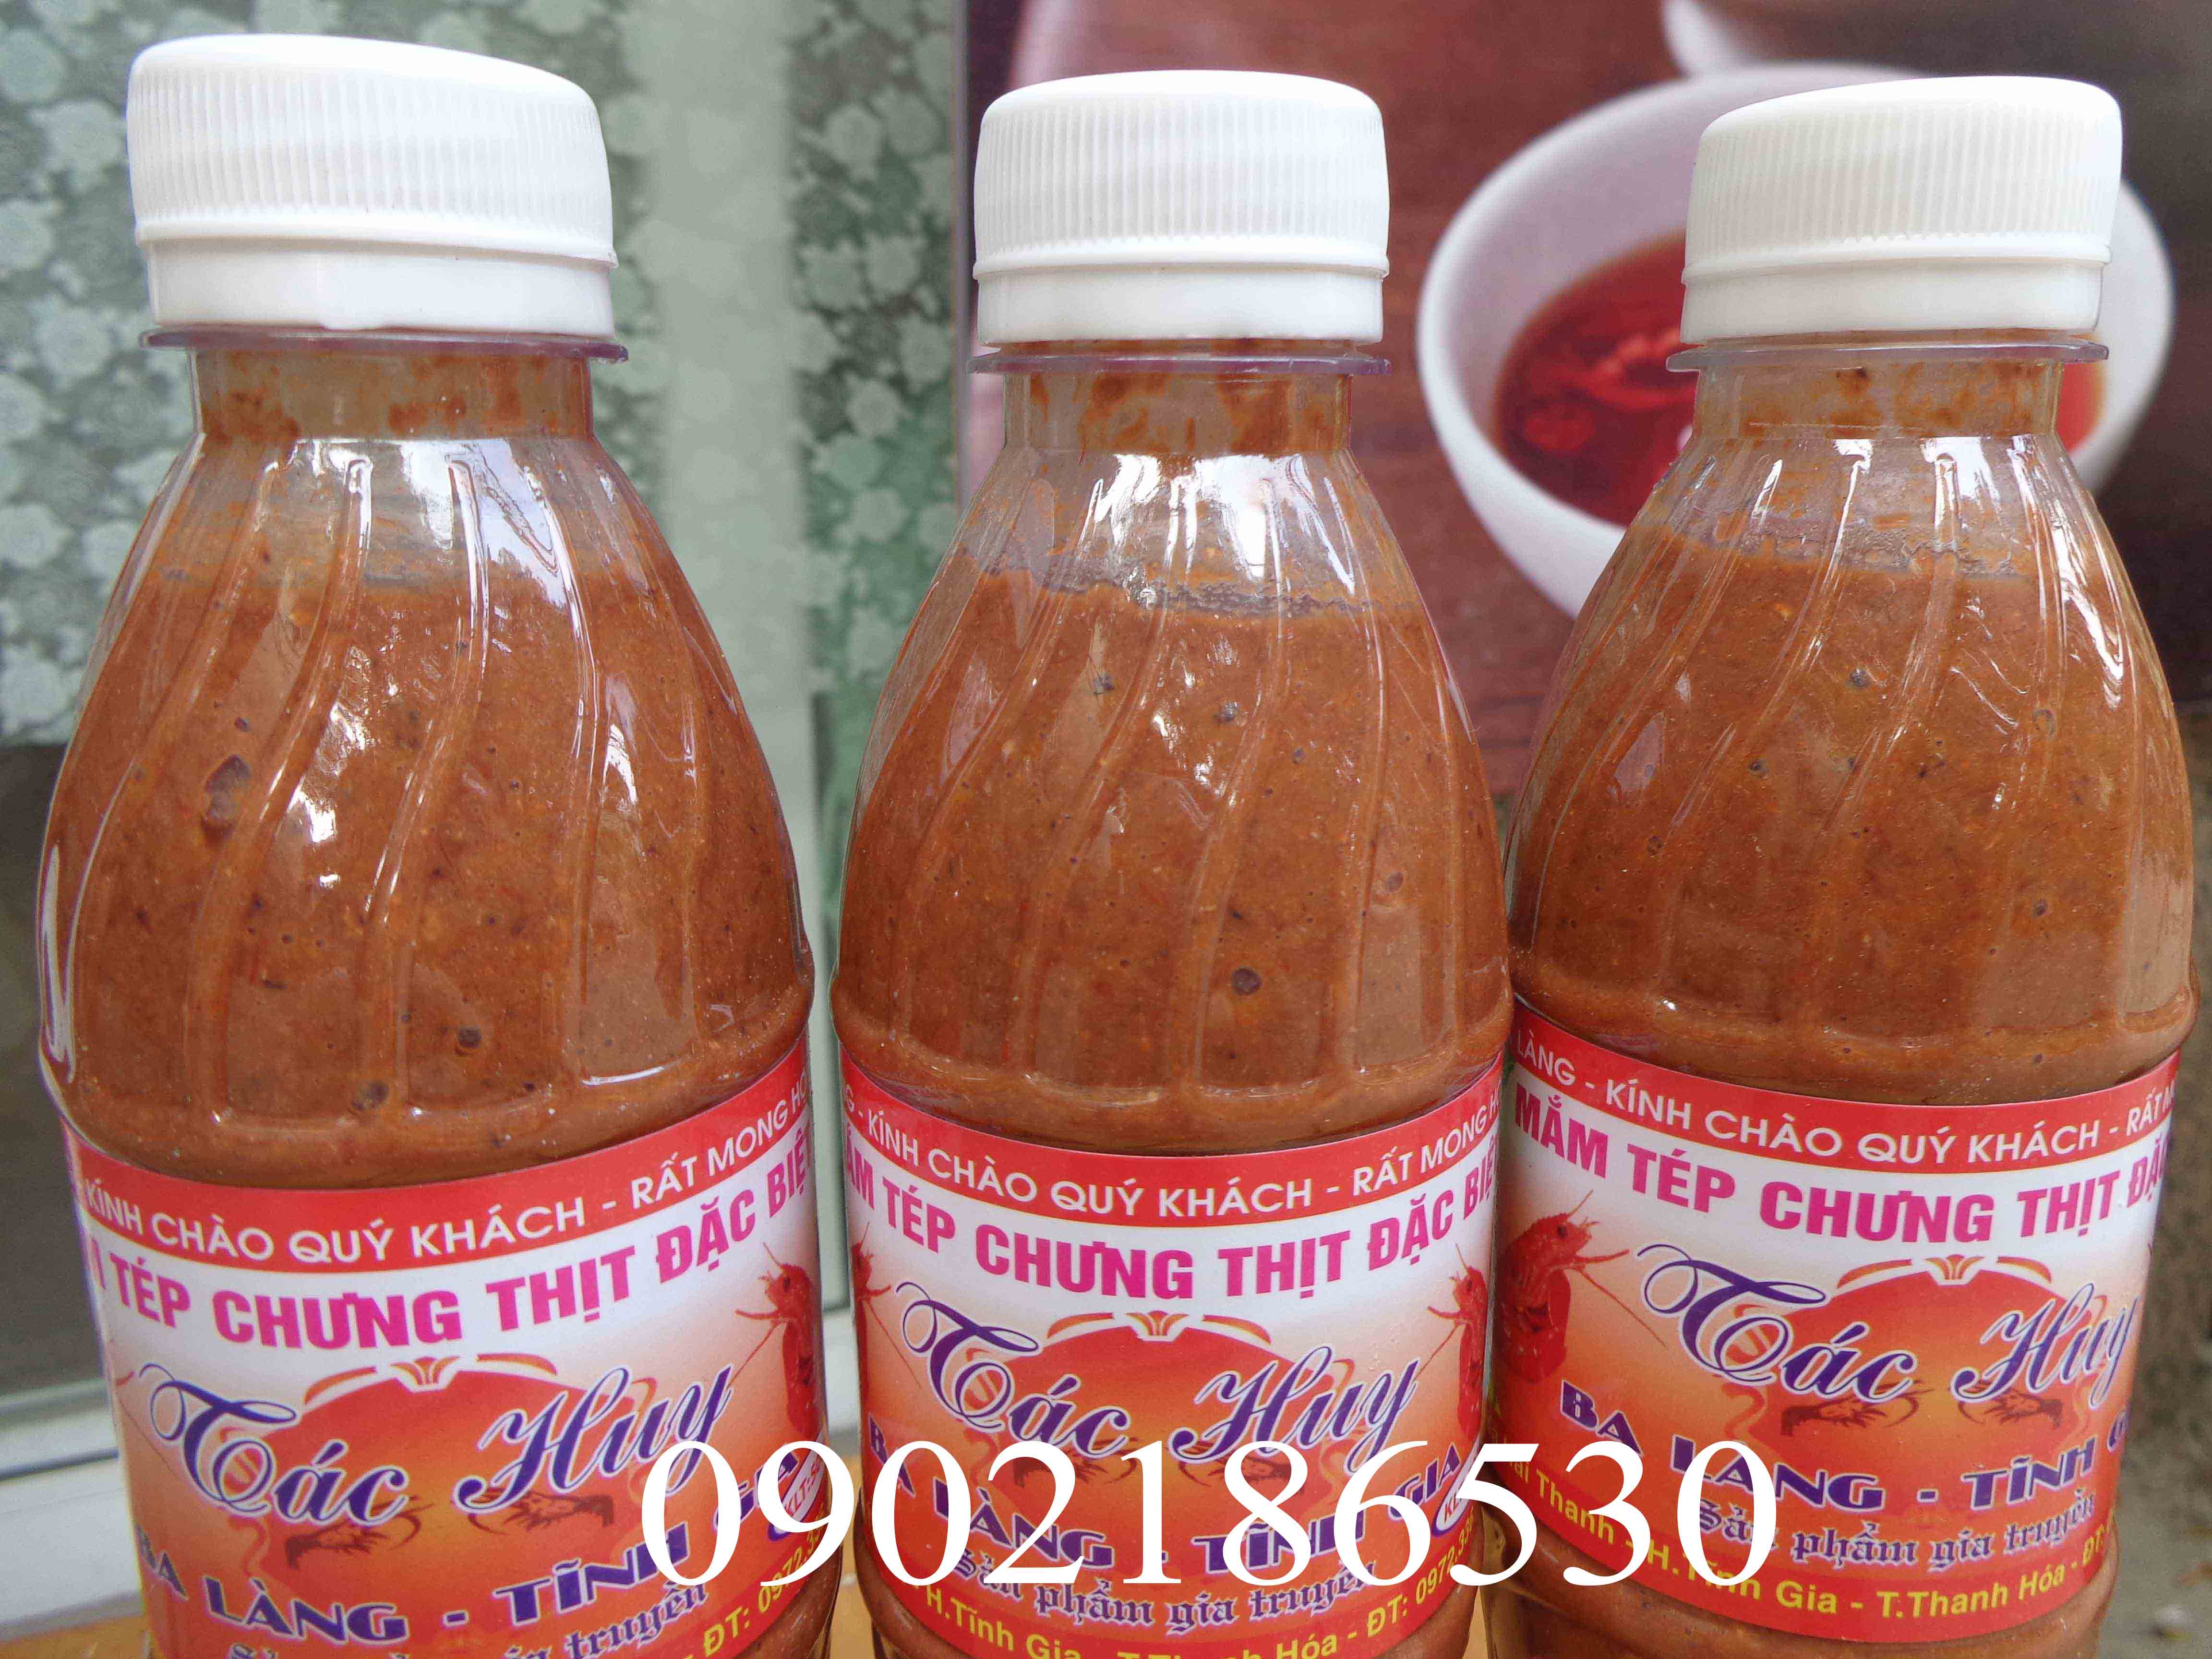 Mắm tép chưng thịt đặc sản Ba làng - Thanh Hóa (chai 550ml) 1